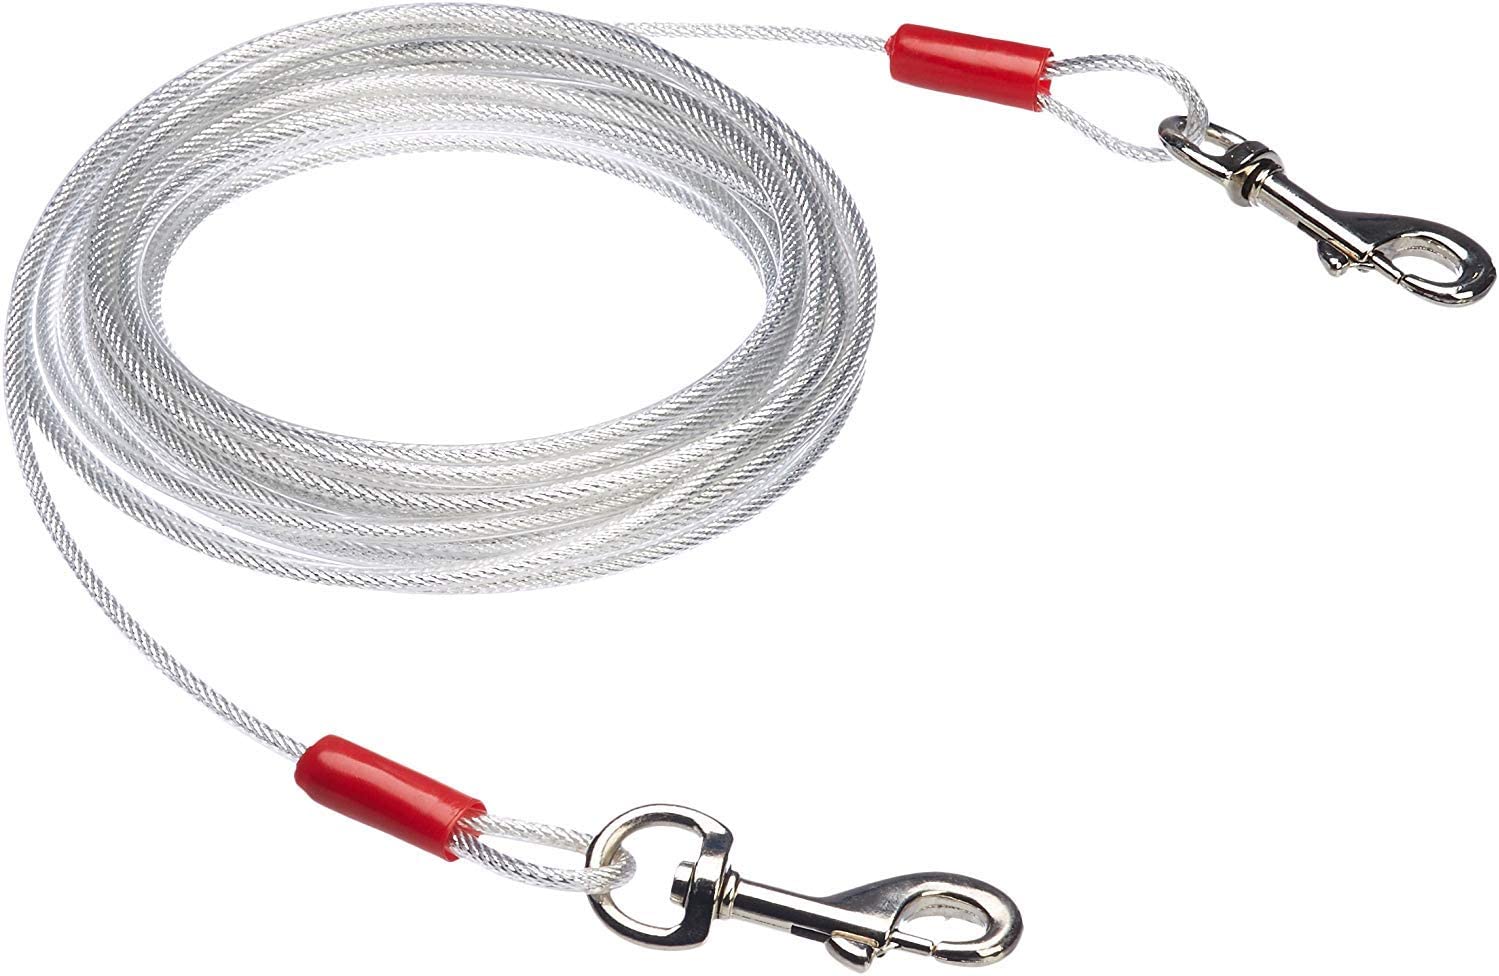  AmazonBasics - Cable para atar perros, hasta 27 kg, 7,62 m 